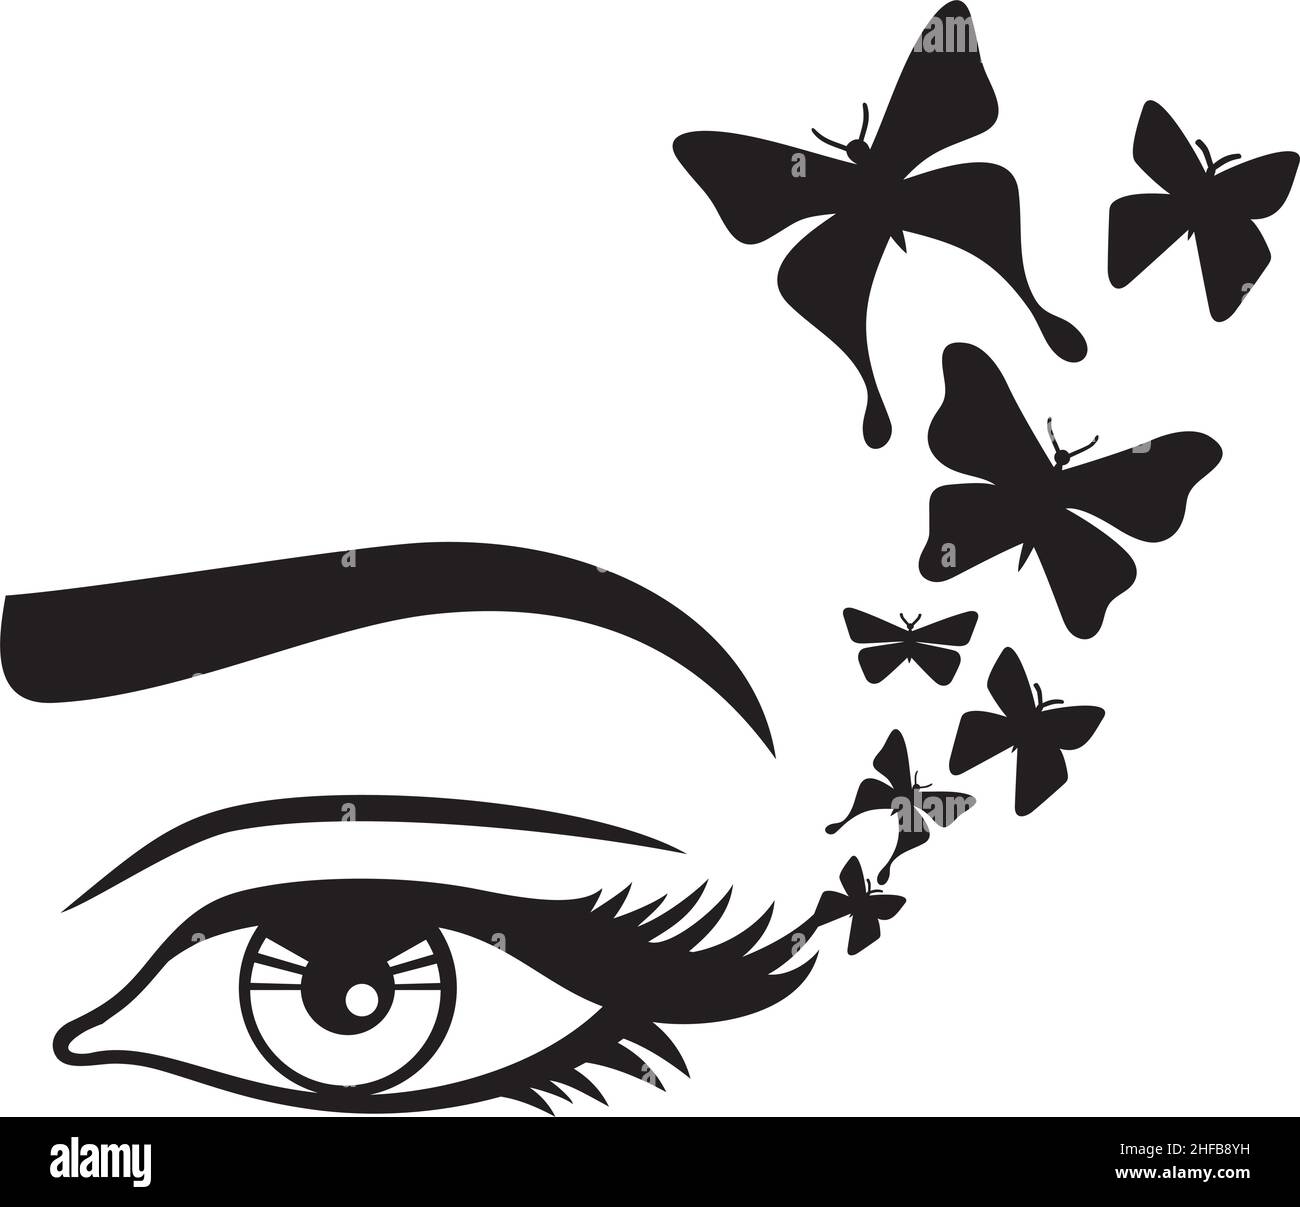 Vektor-Illustration für Frauen mit Augen und Schmetterlingen Stock Vektor